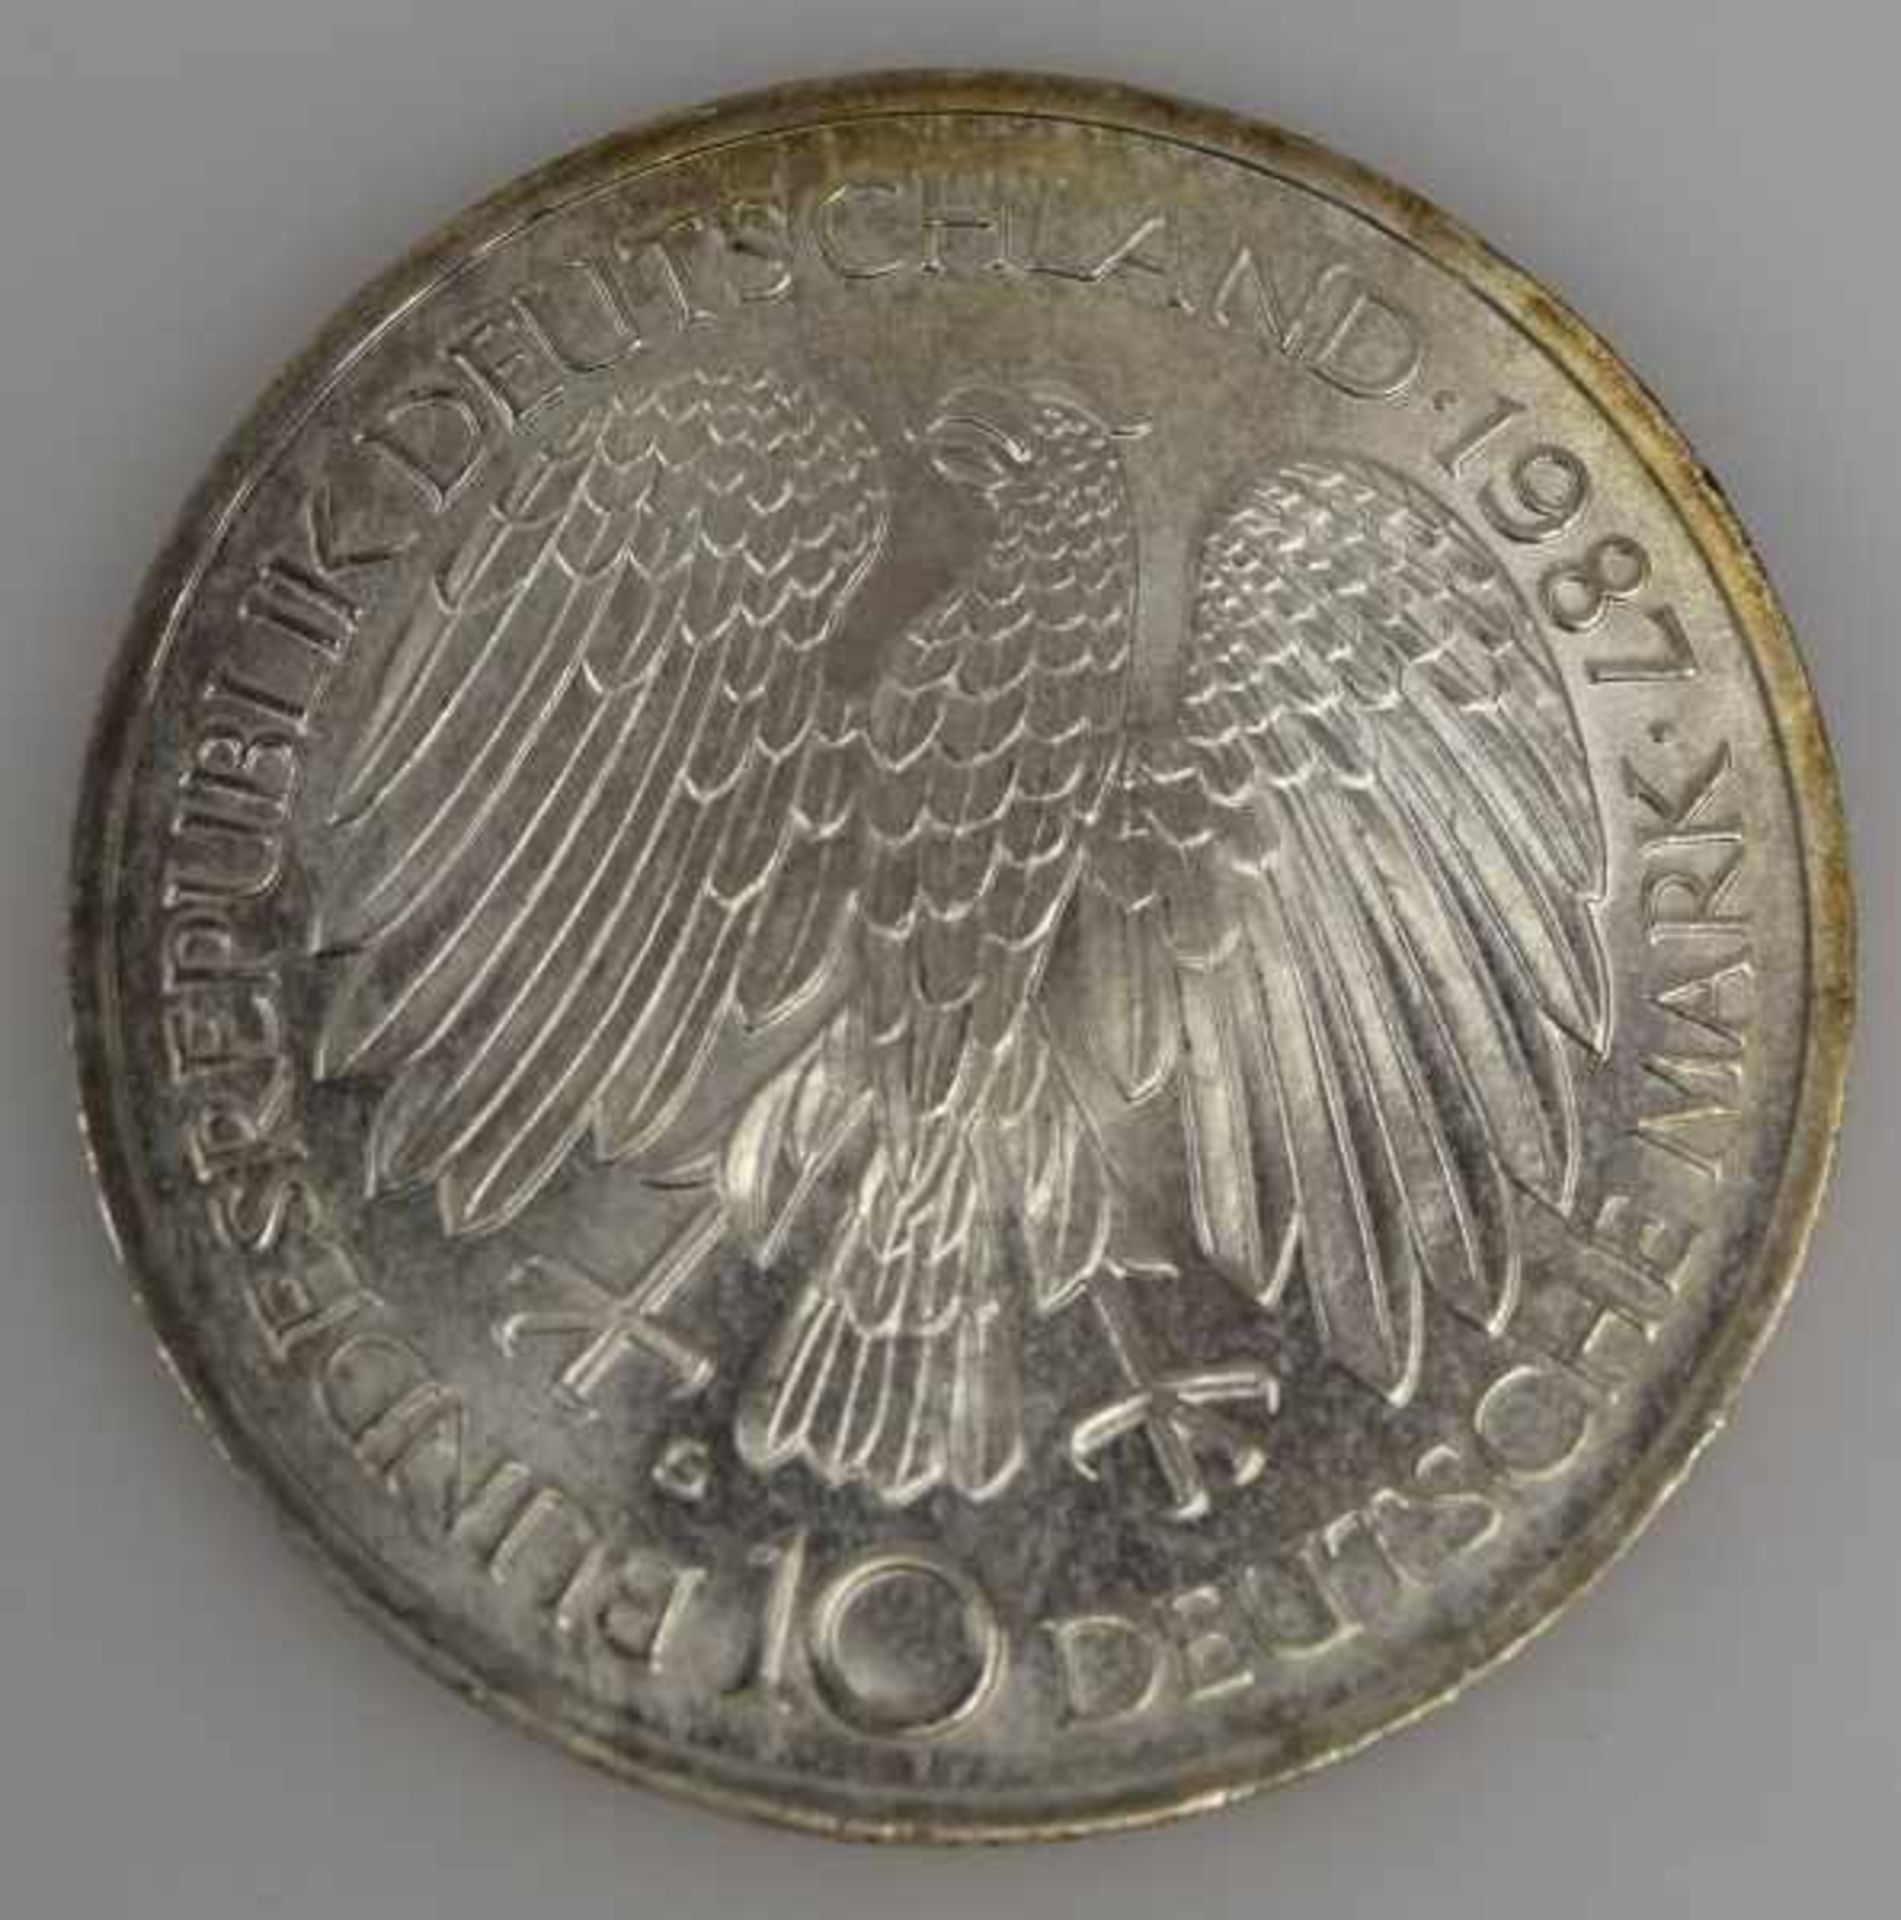 MÜNZEN-LOT 1 Münzanhänger mit Münze 10Fr. Schweiz Nachprägung in Fassung 14ct, 8,3g -1 Goldmünze 200 - Bild 9 aus 17